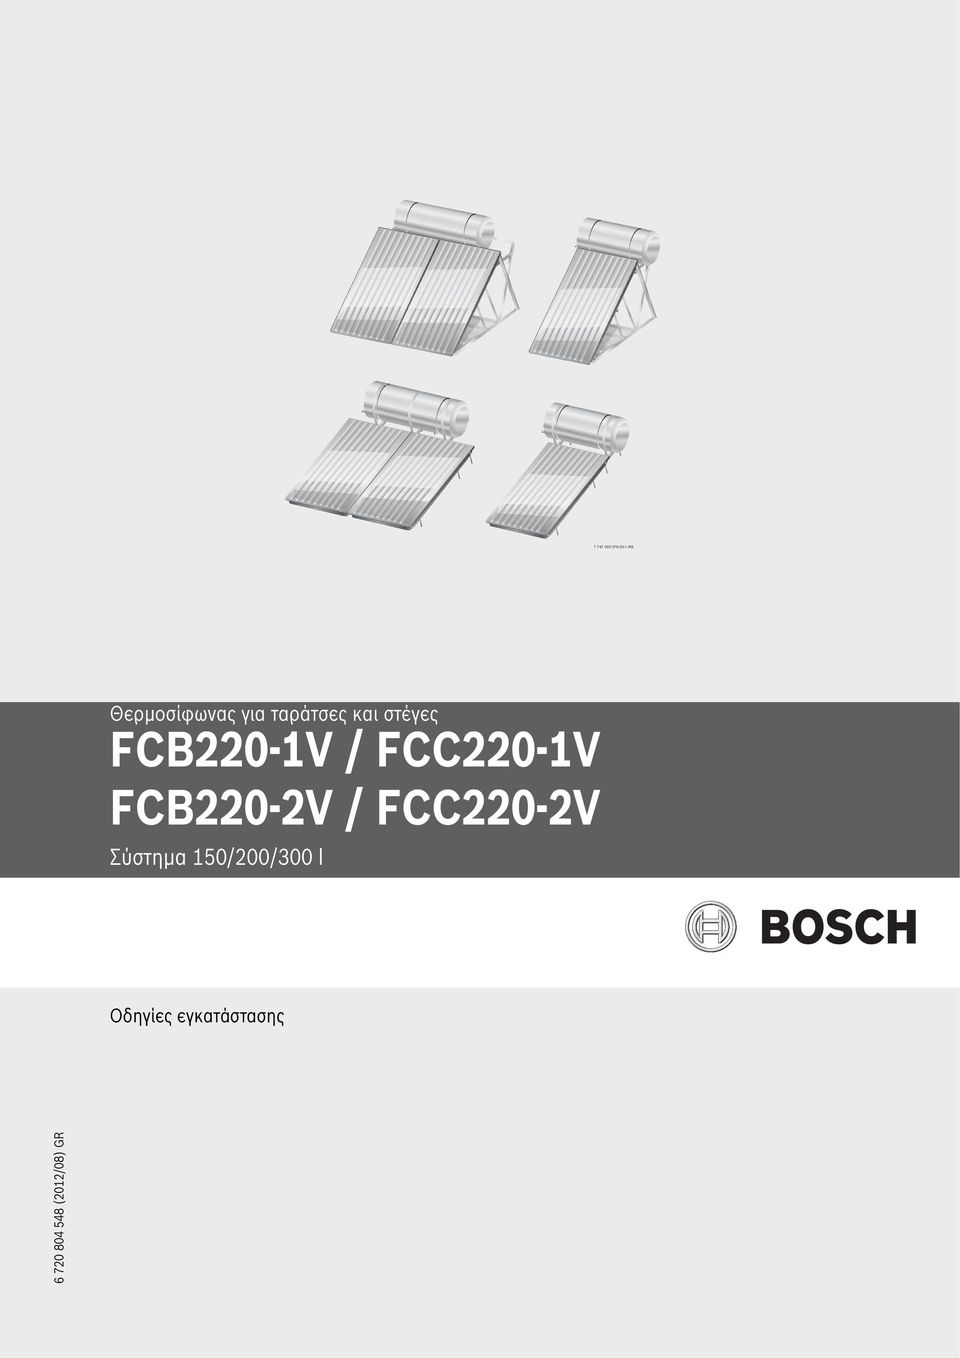 στέγες FCB0-V / FCC0-V Σύστημα